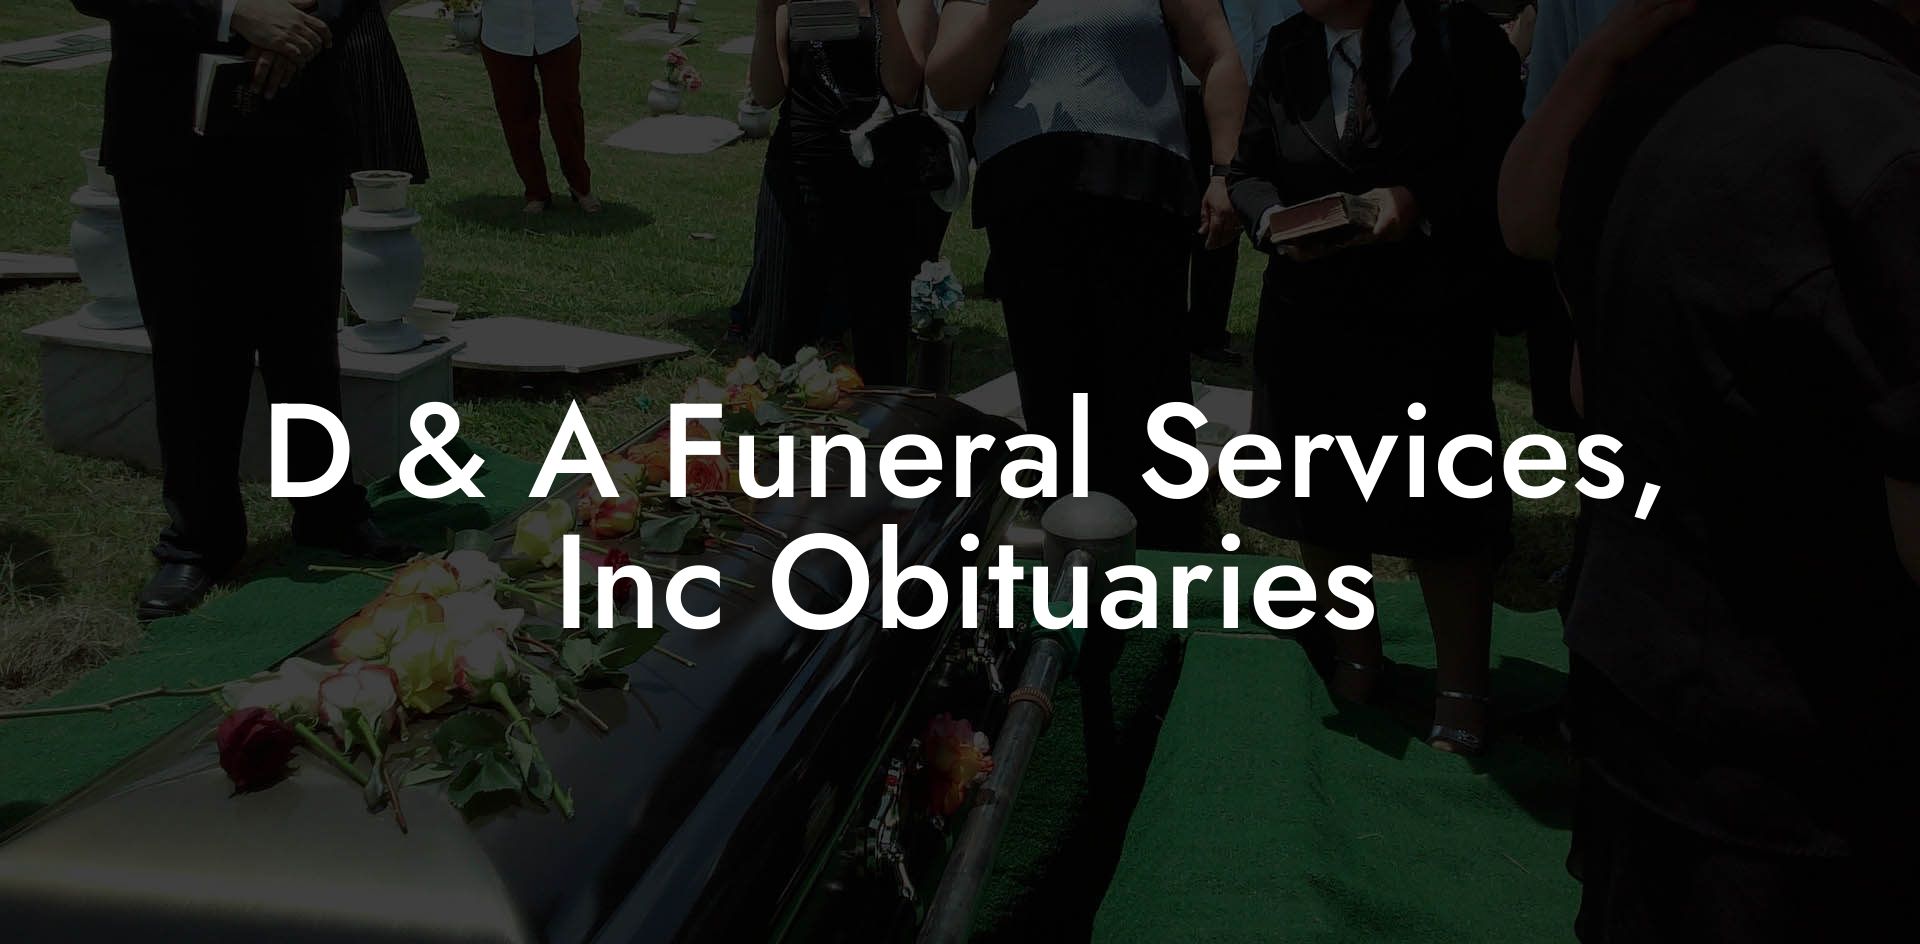 D & A Funeral Services, Inc Obituaries